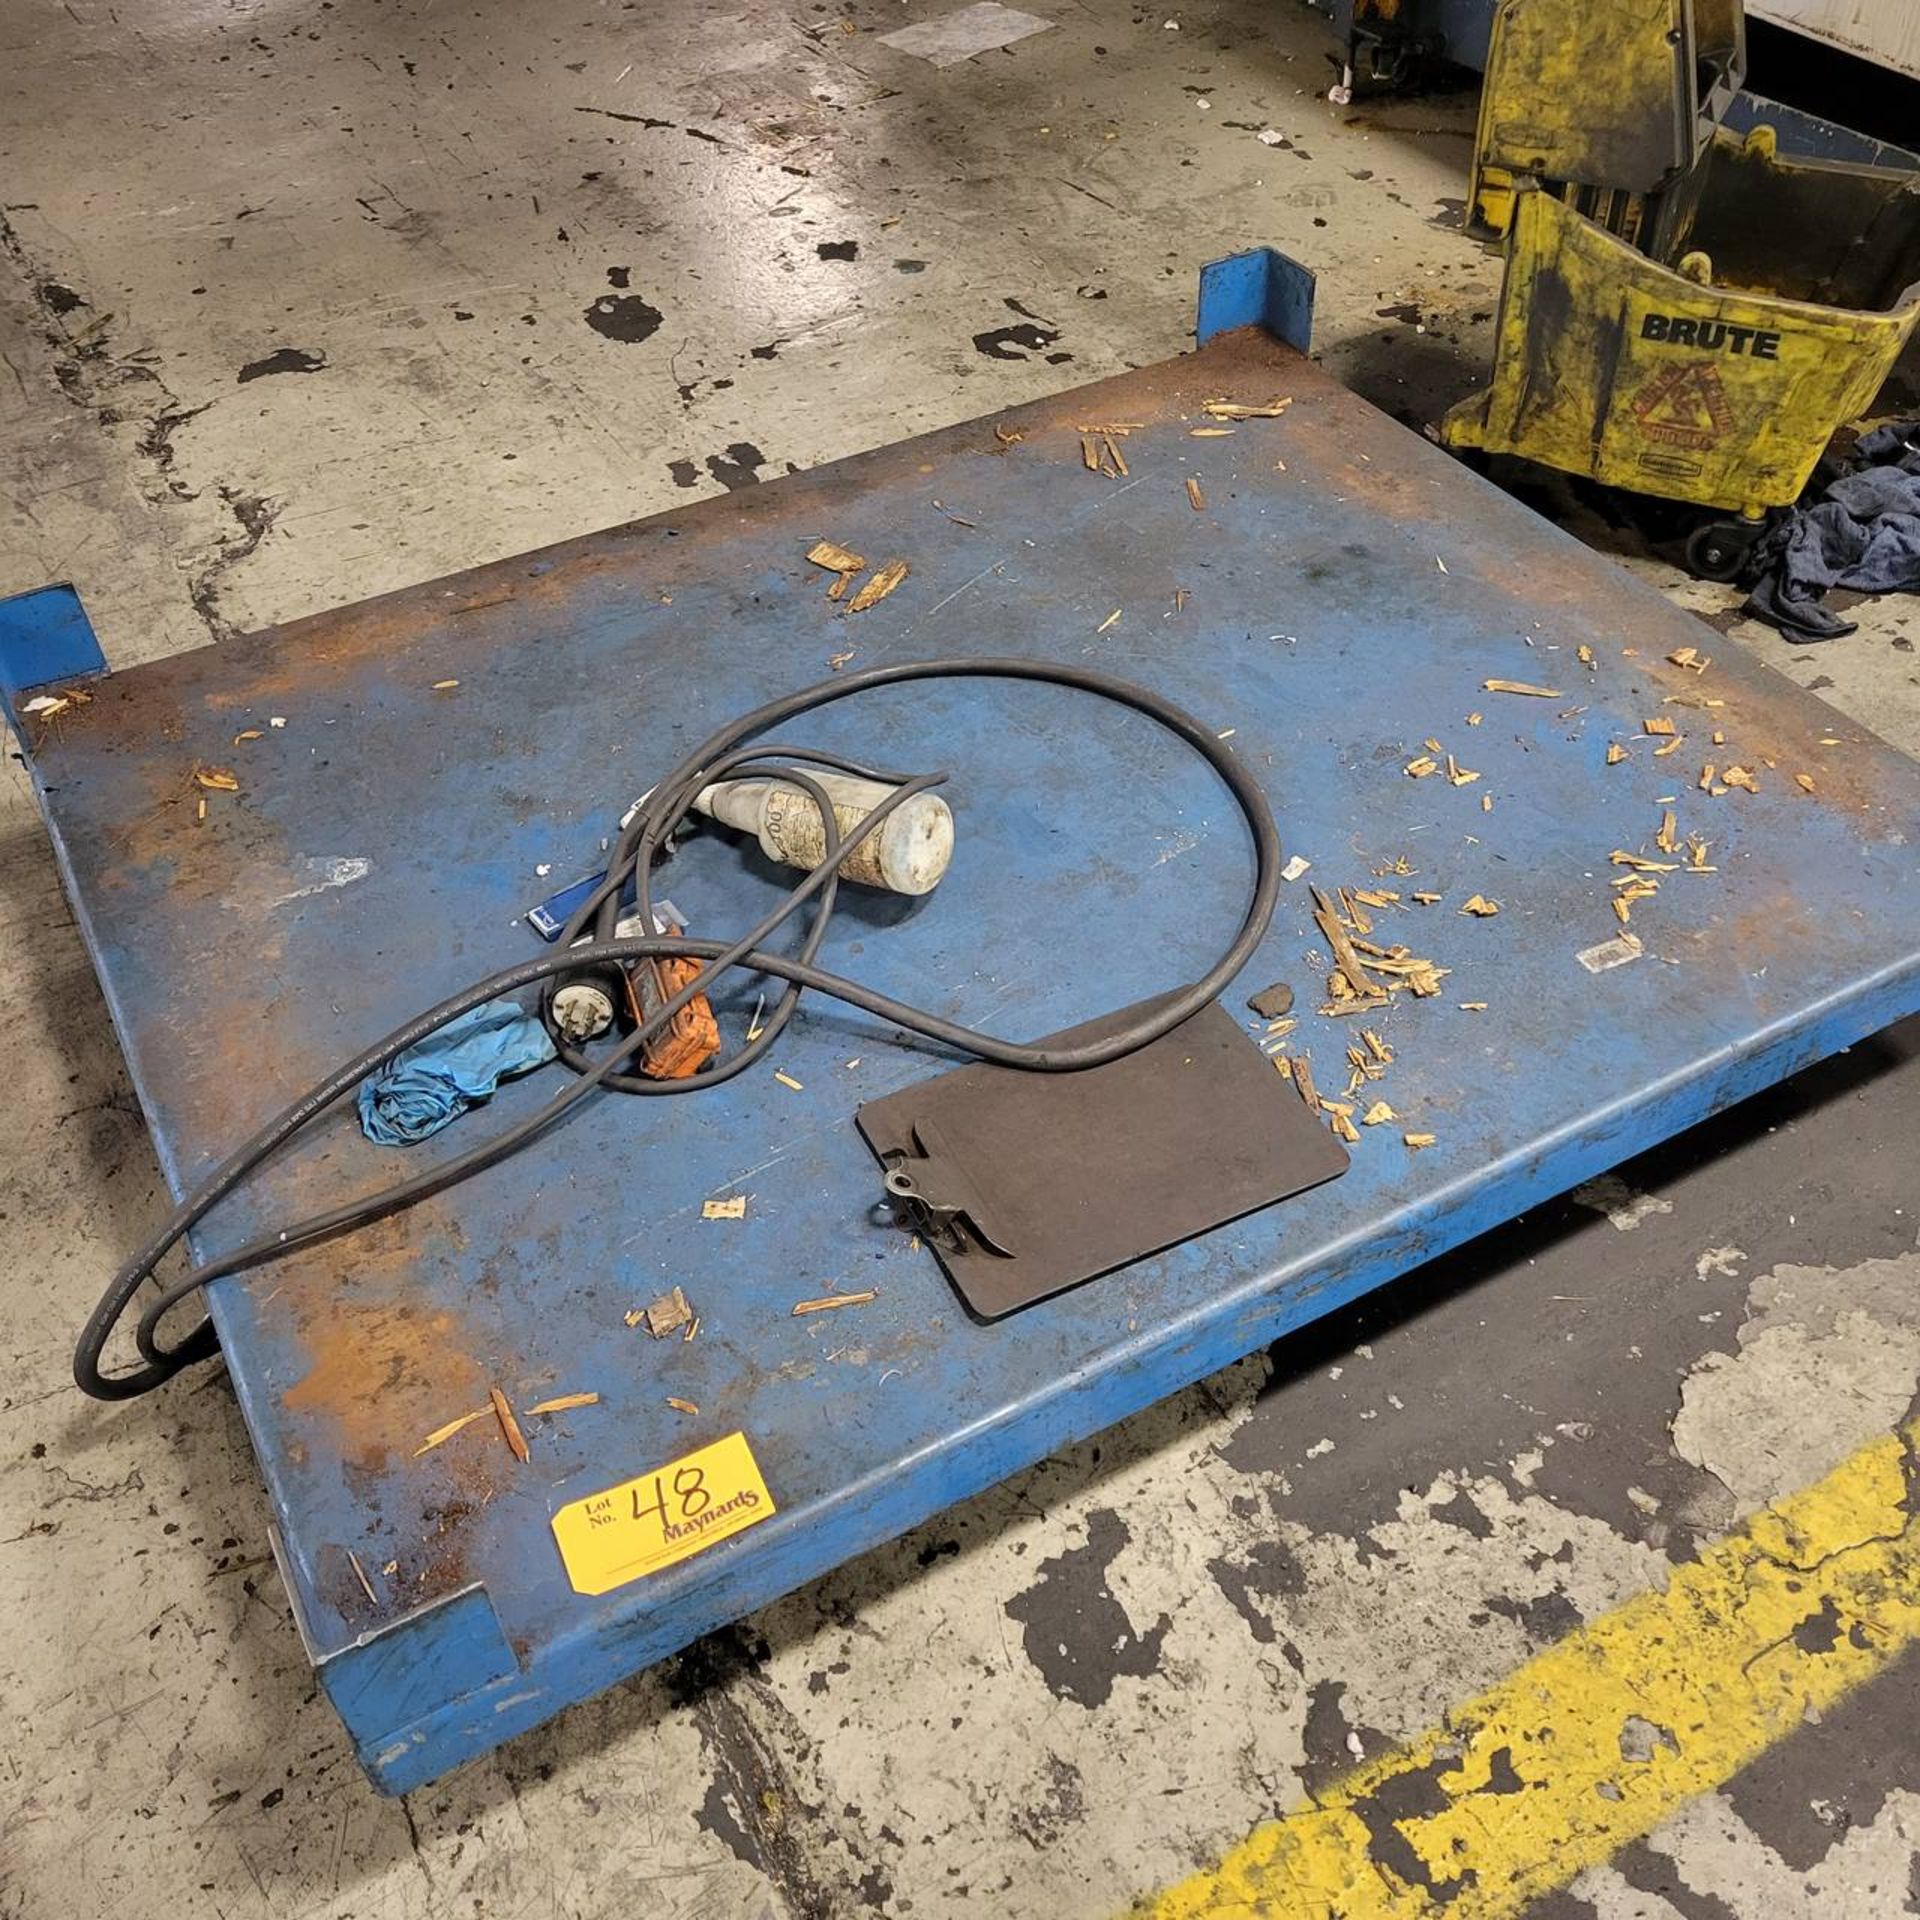 4000lb cap. Hydraulic scissor lift table